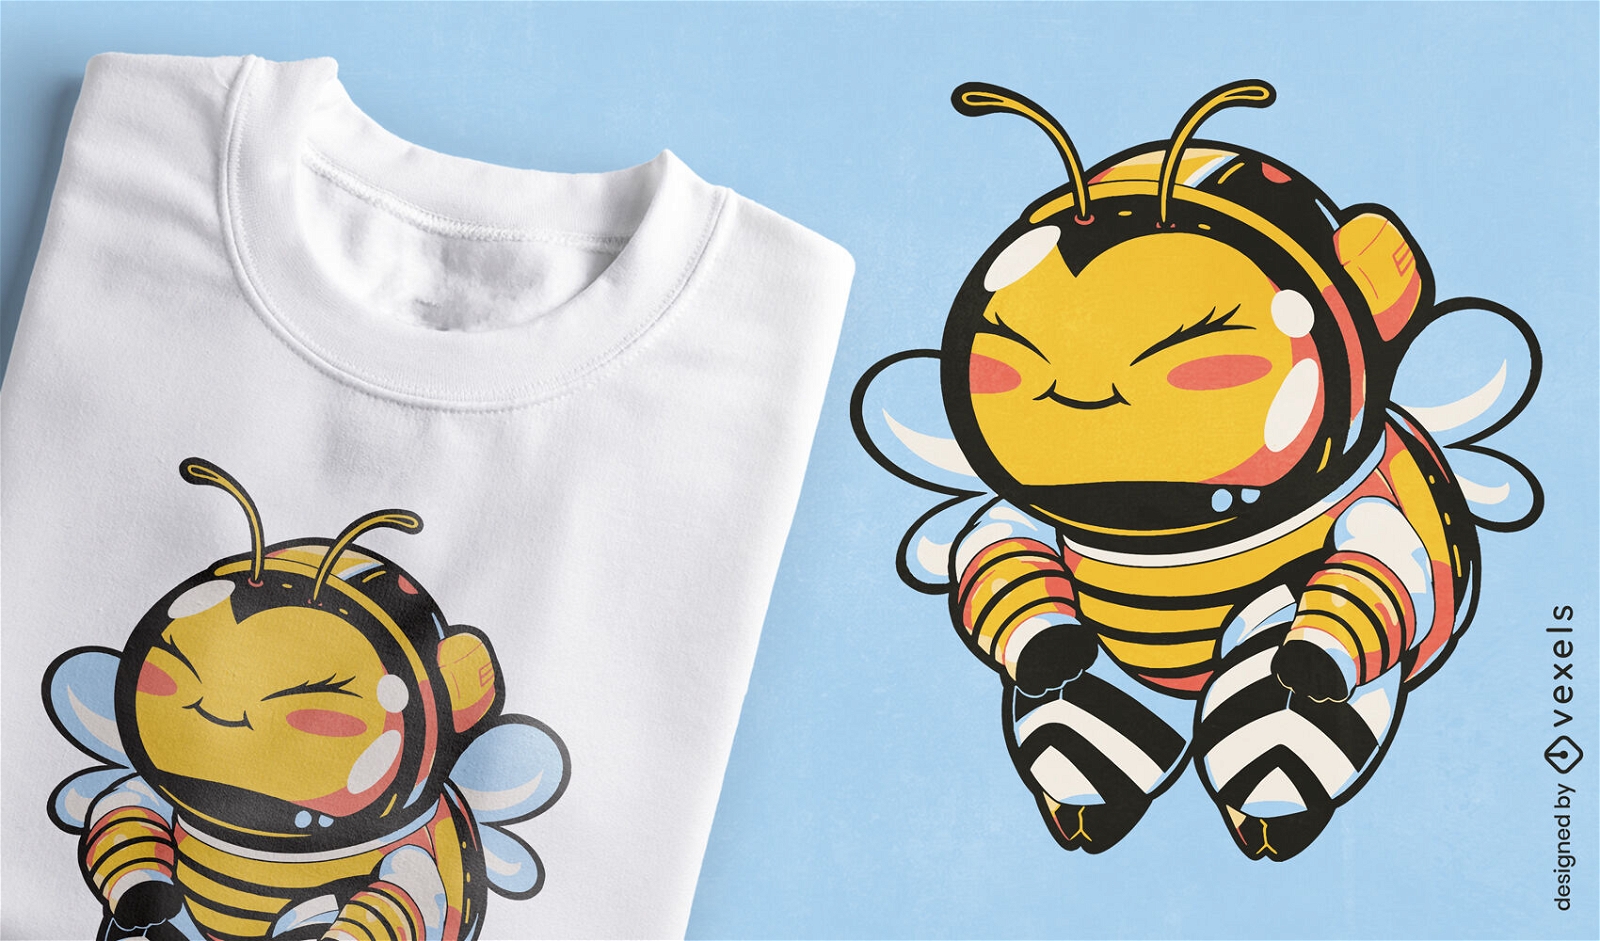 Lindo dise?o de camiseta de abeja astronauta.